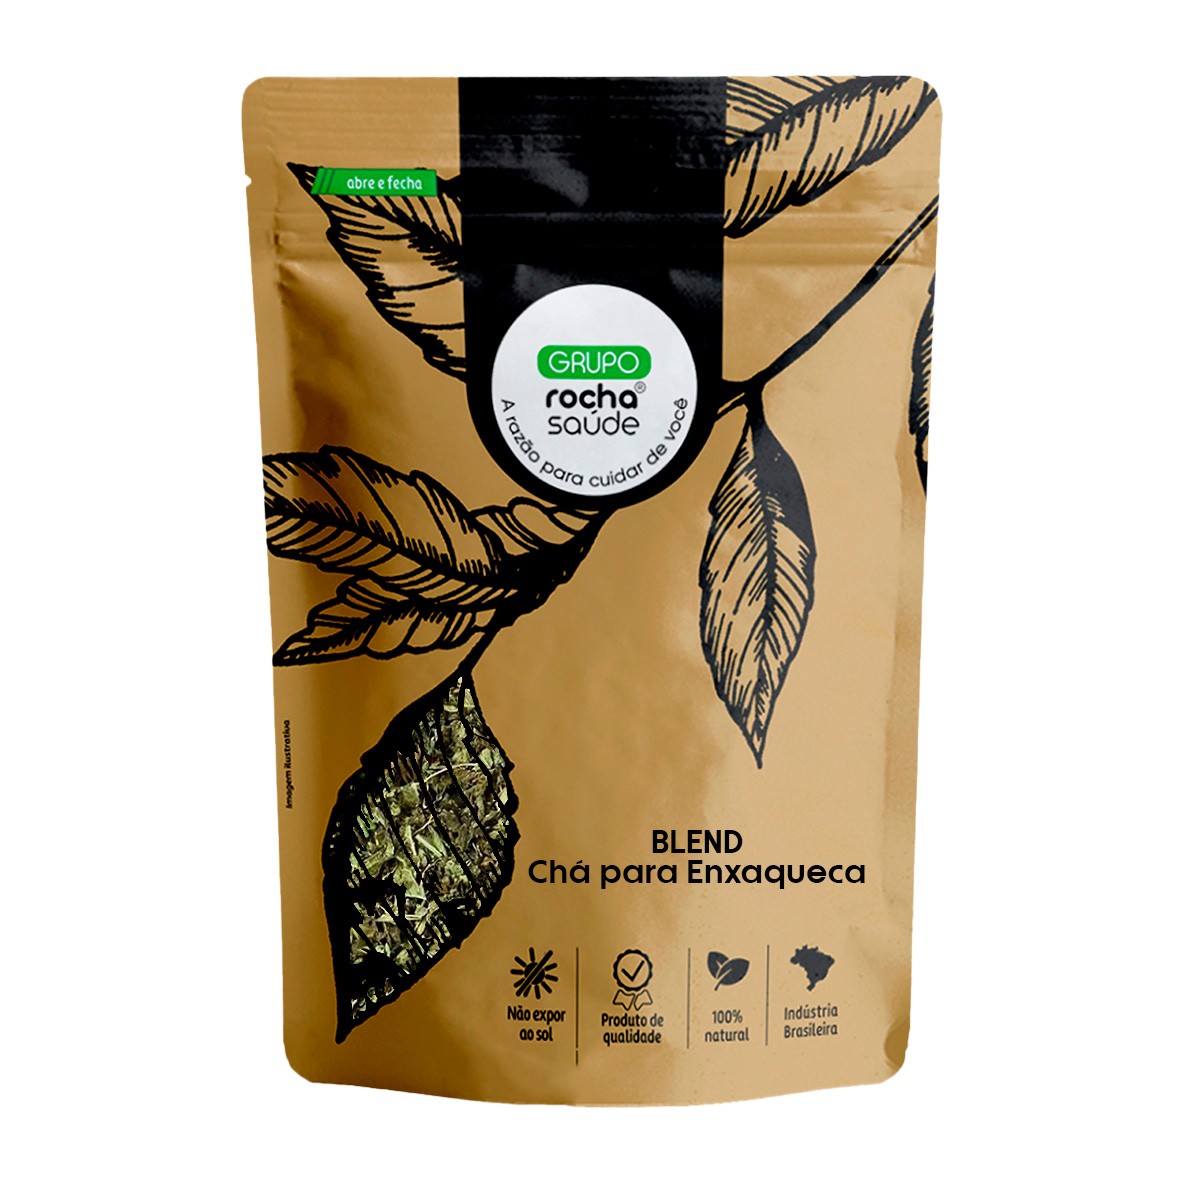 Blend - Chá para Enxaqueca  - 100% Natural - Alta Qualidade